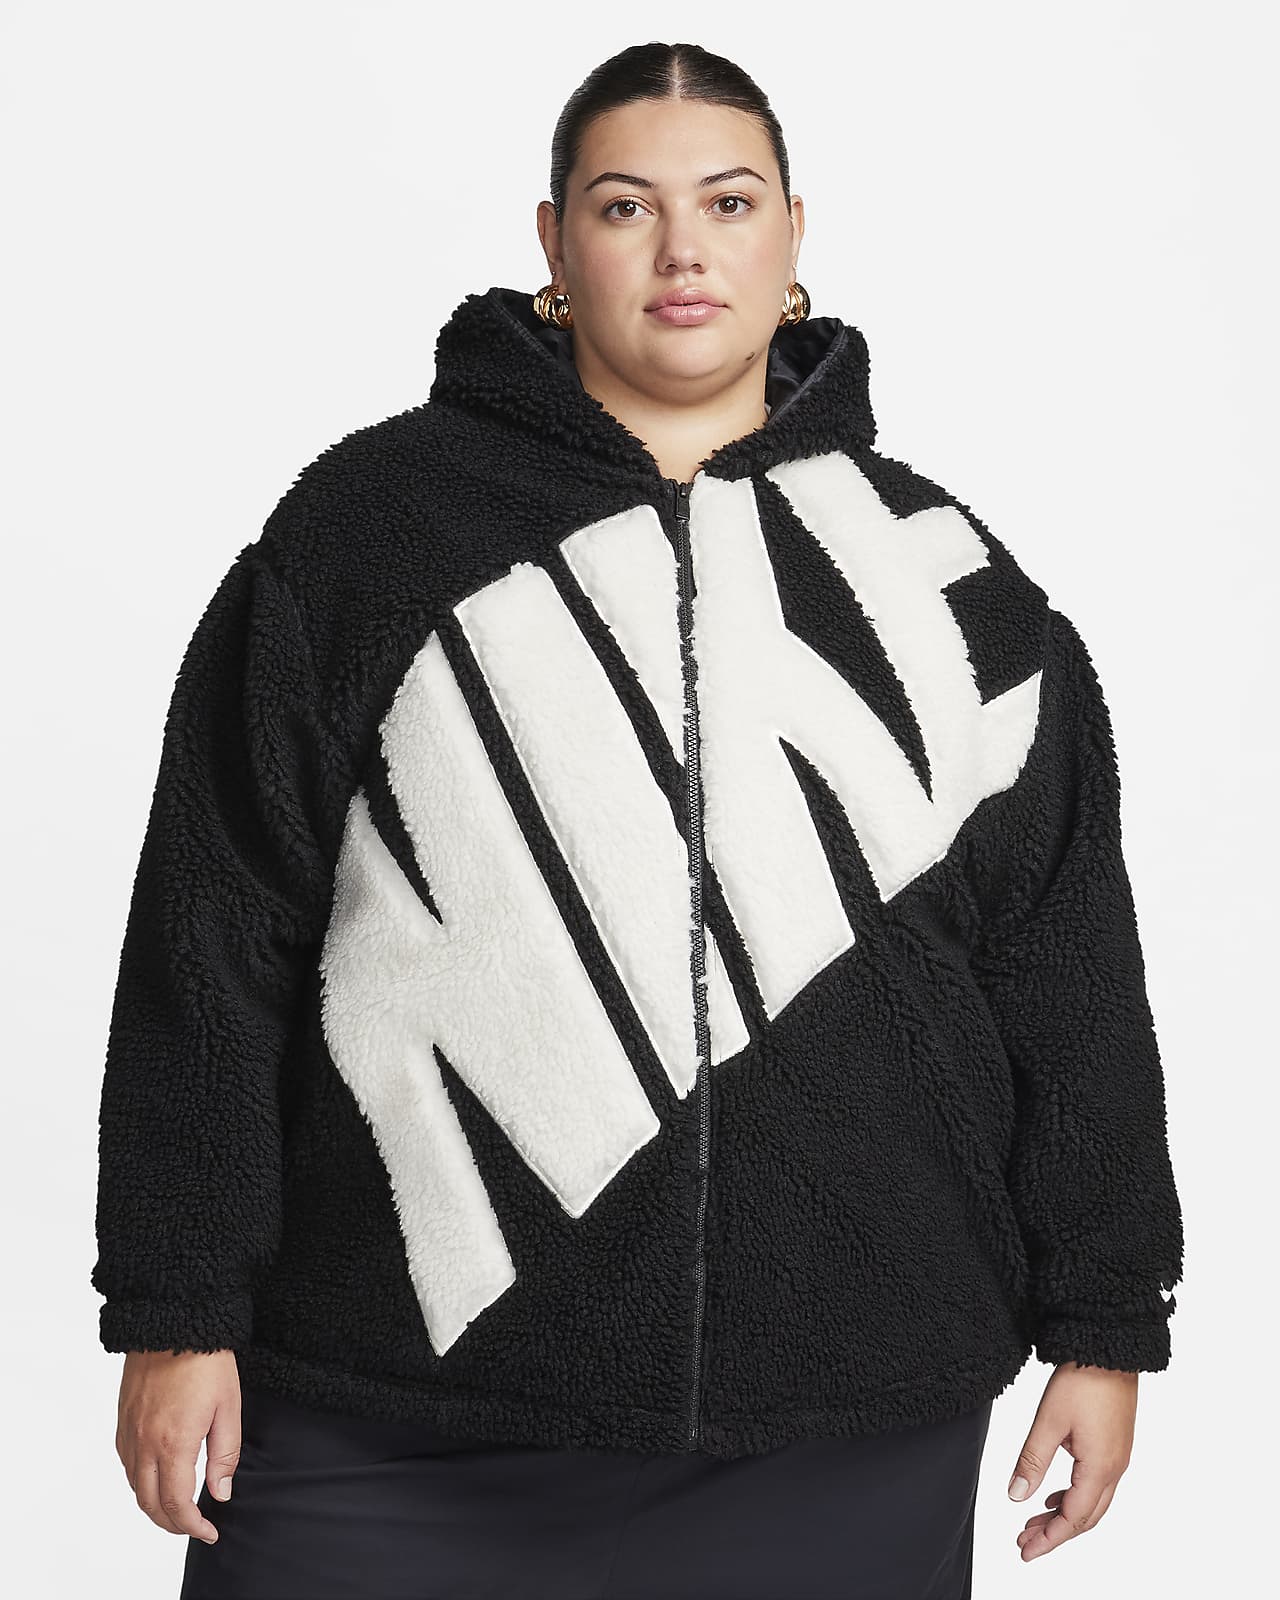 Nike Sportswear Women's Logo High-Pile Fleece Jacket (Plus Size). Nike CA